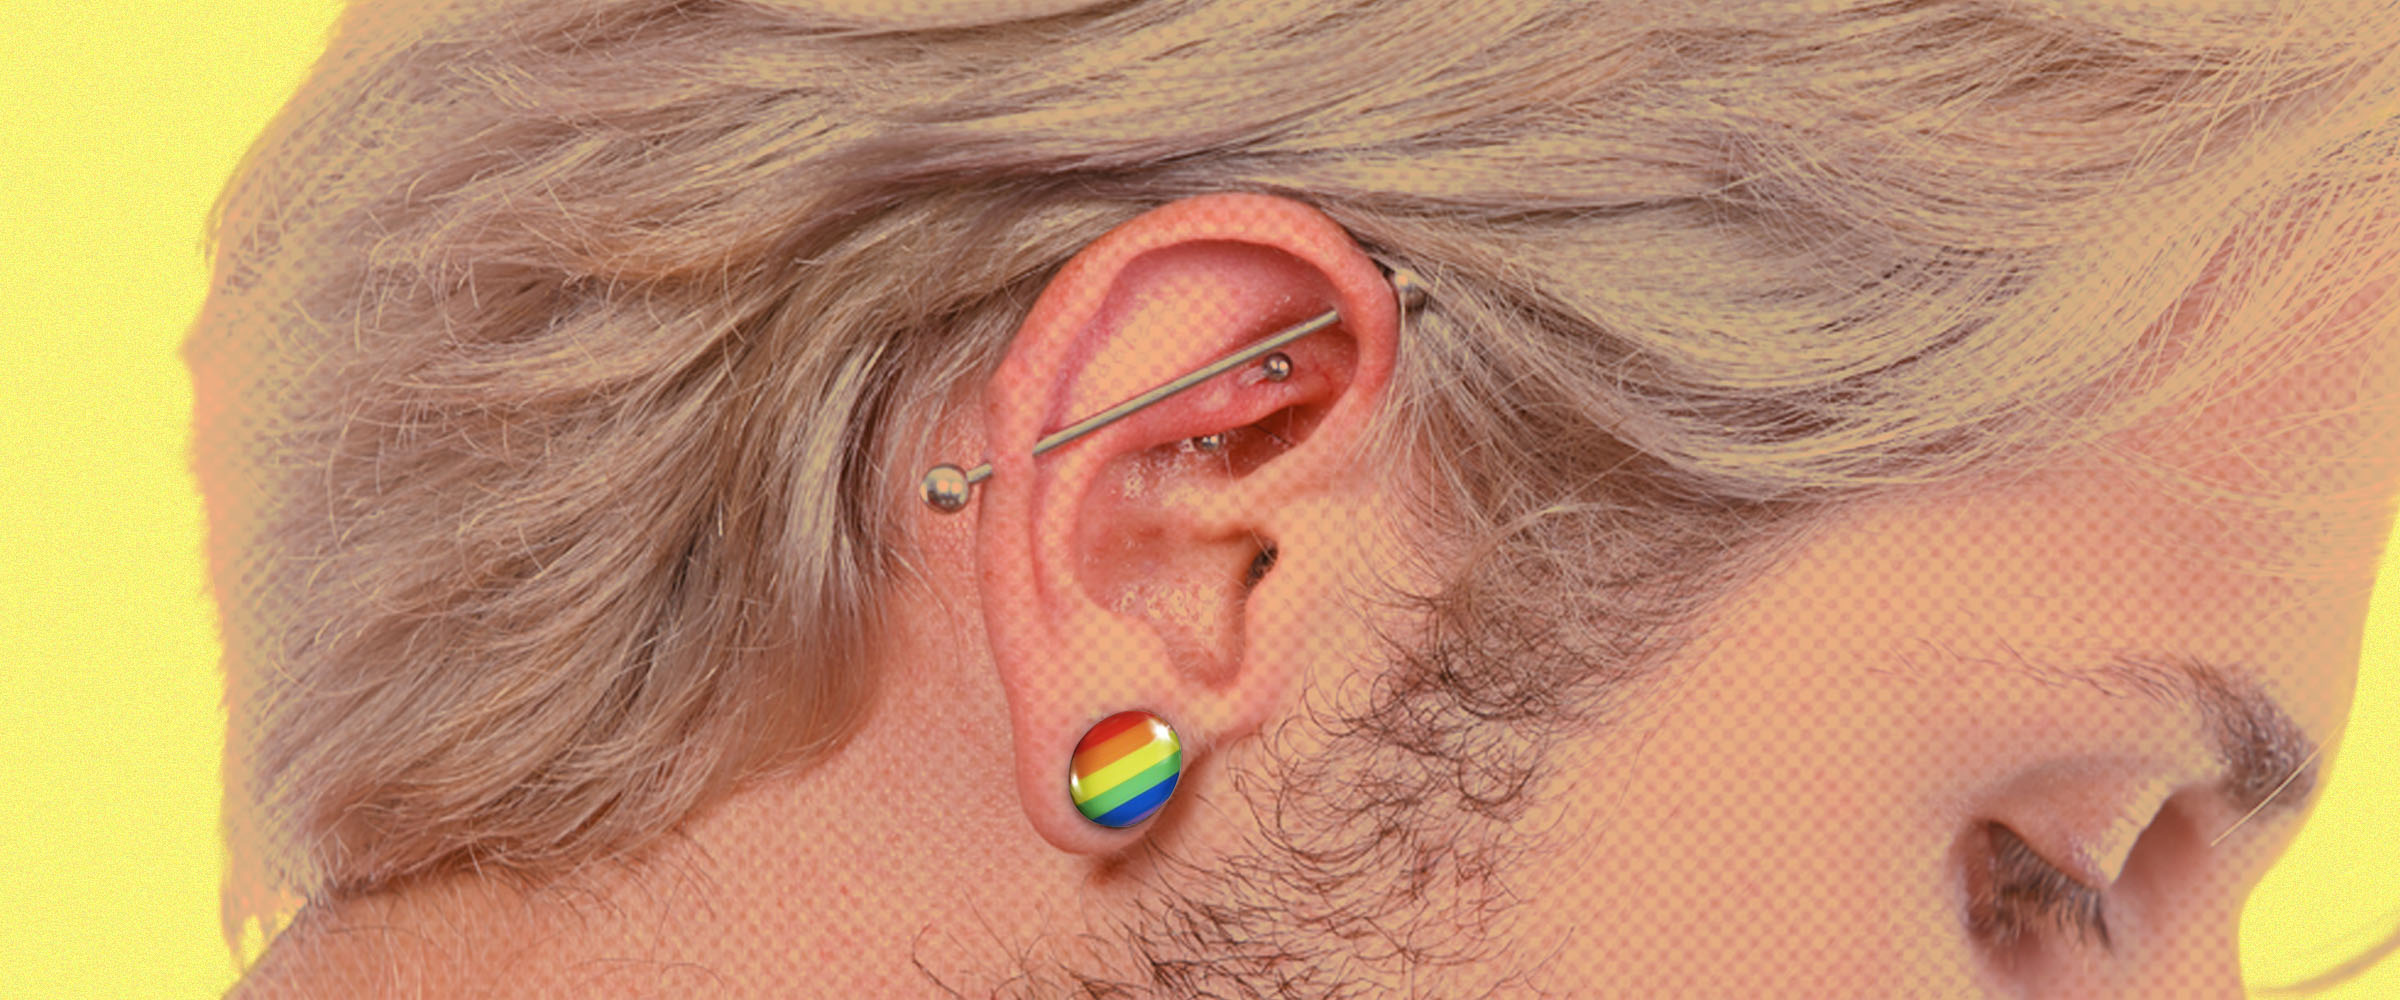 Why do guys wear earrings in both ears